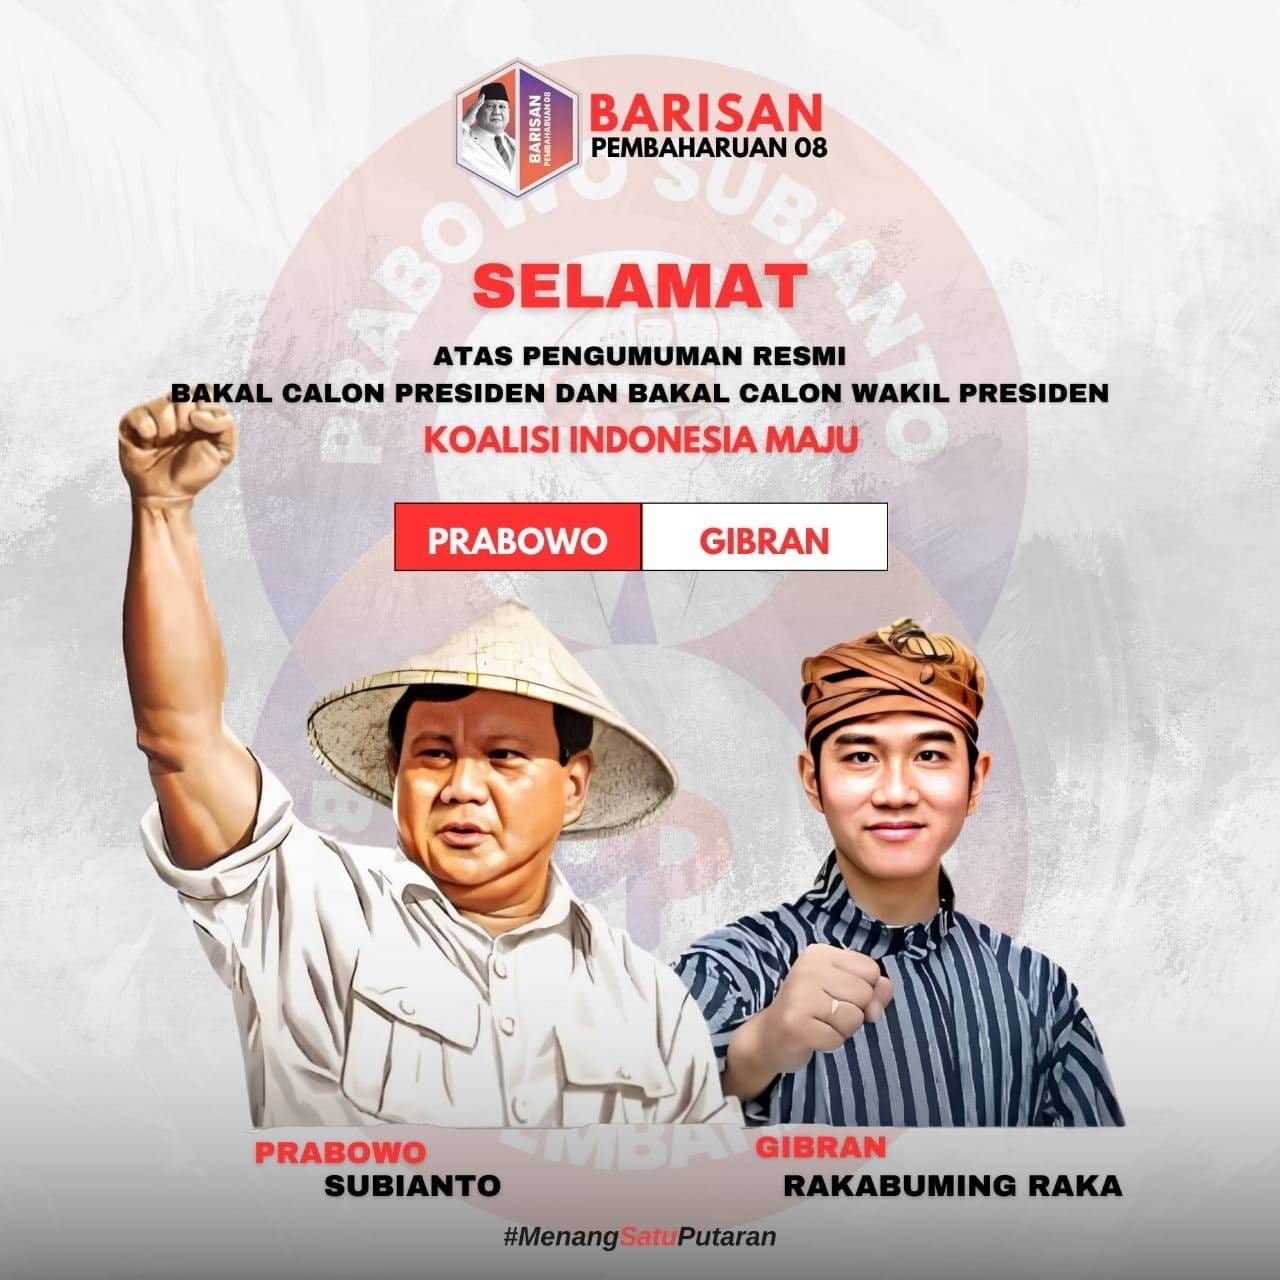 Pasangan Prabowo Gibran Resmi Daftar KPU RI, Relawan Barisan Pembaharuan 08 Turun ke Basis Rakyat 